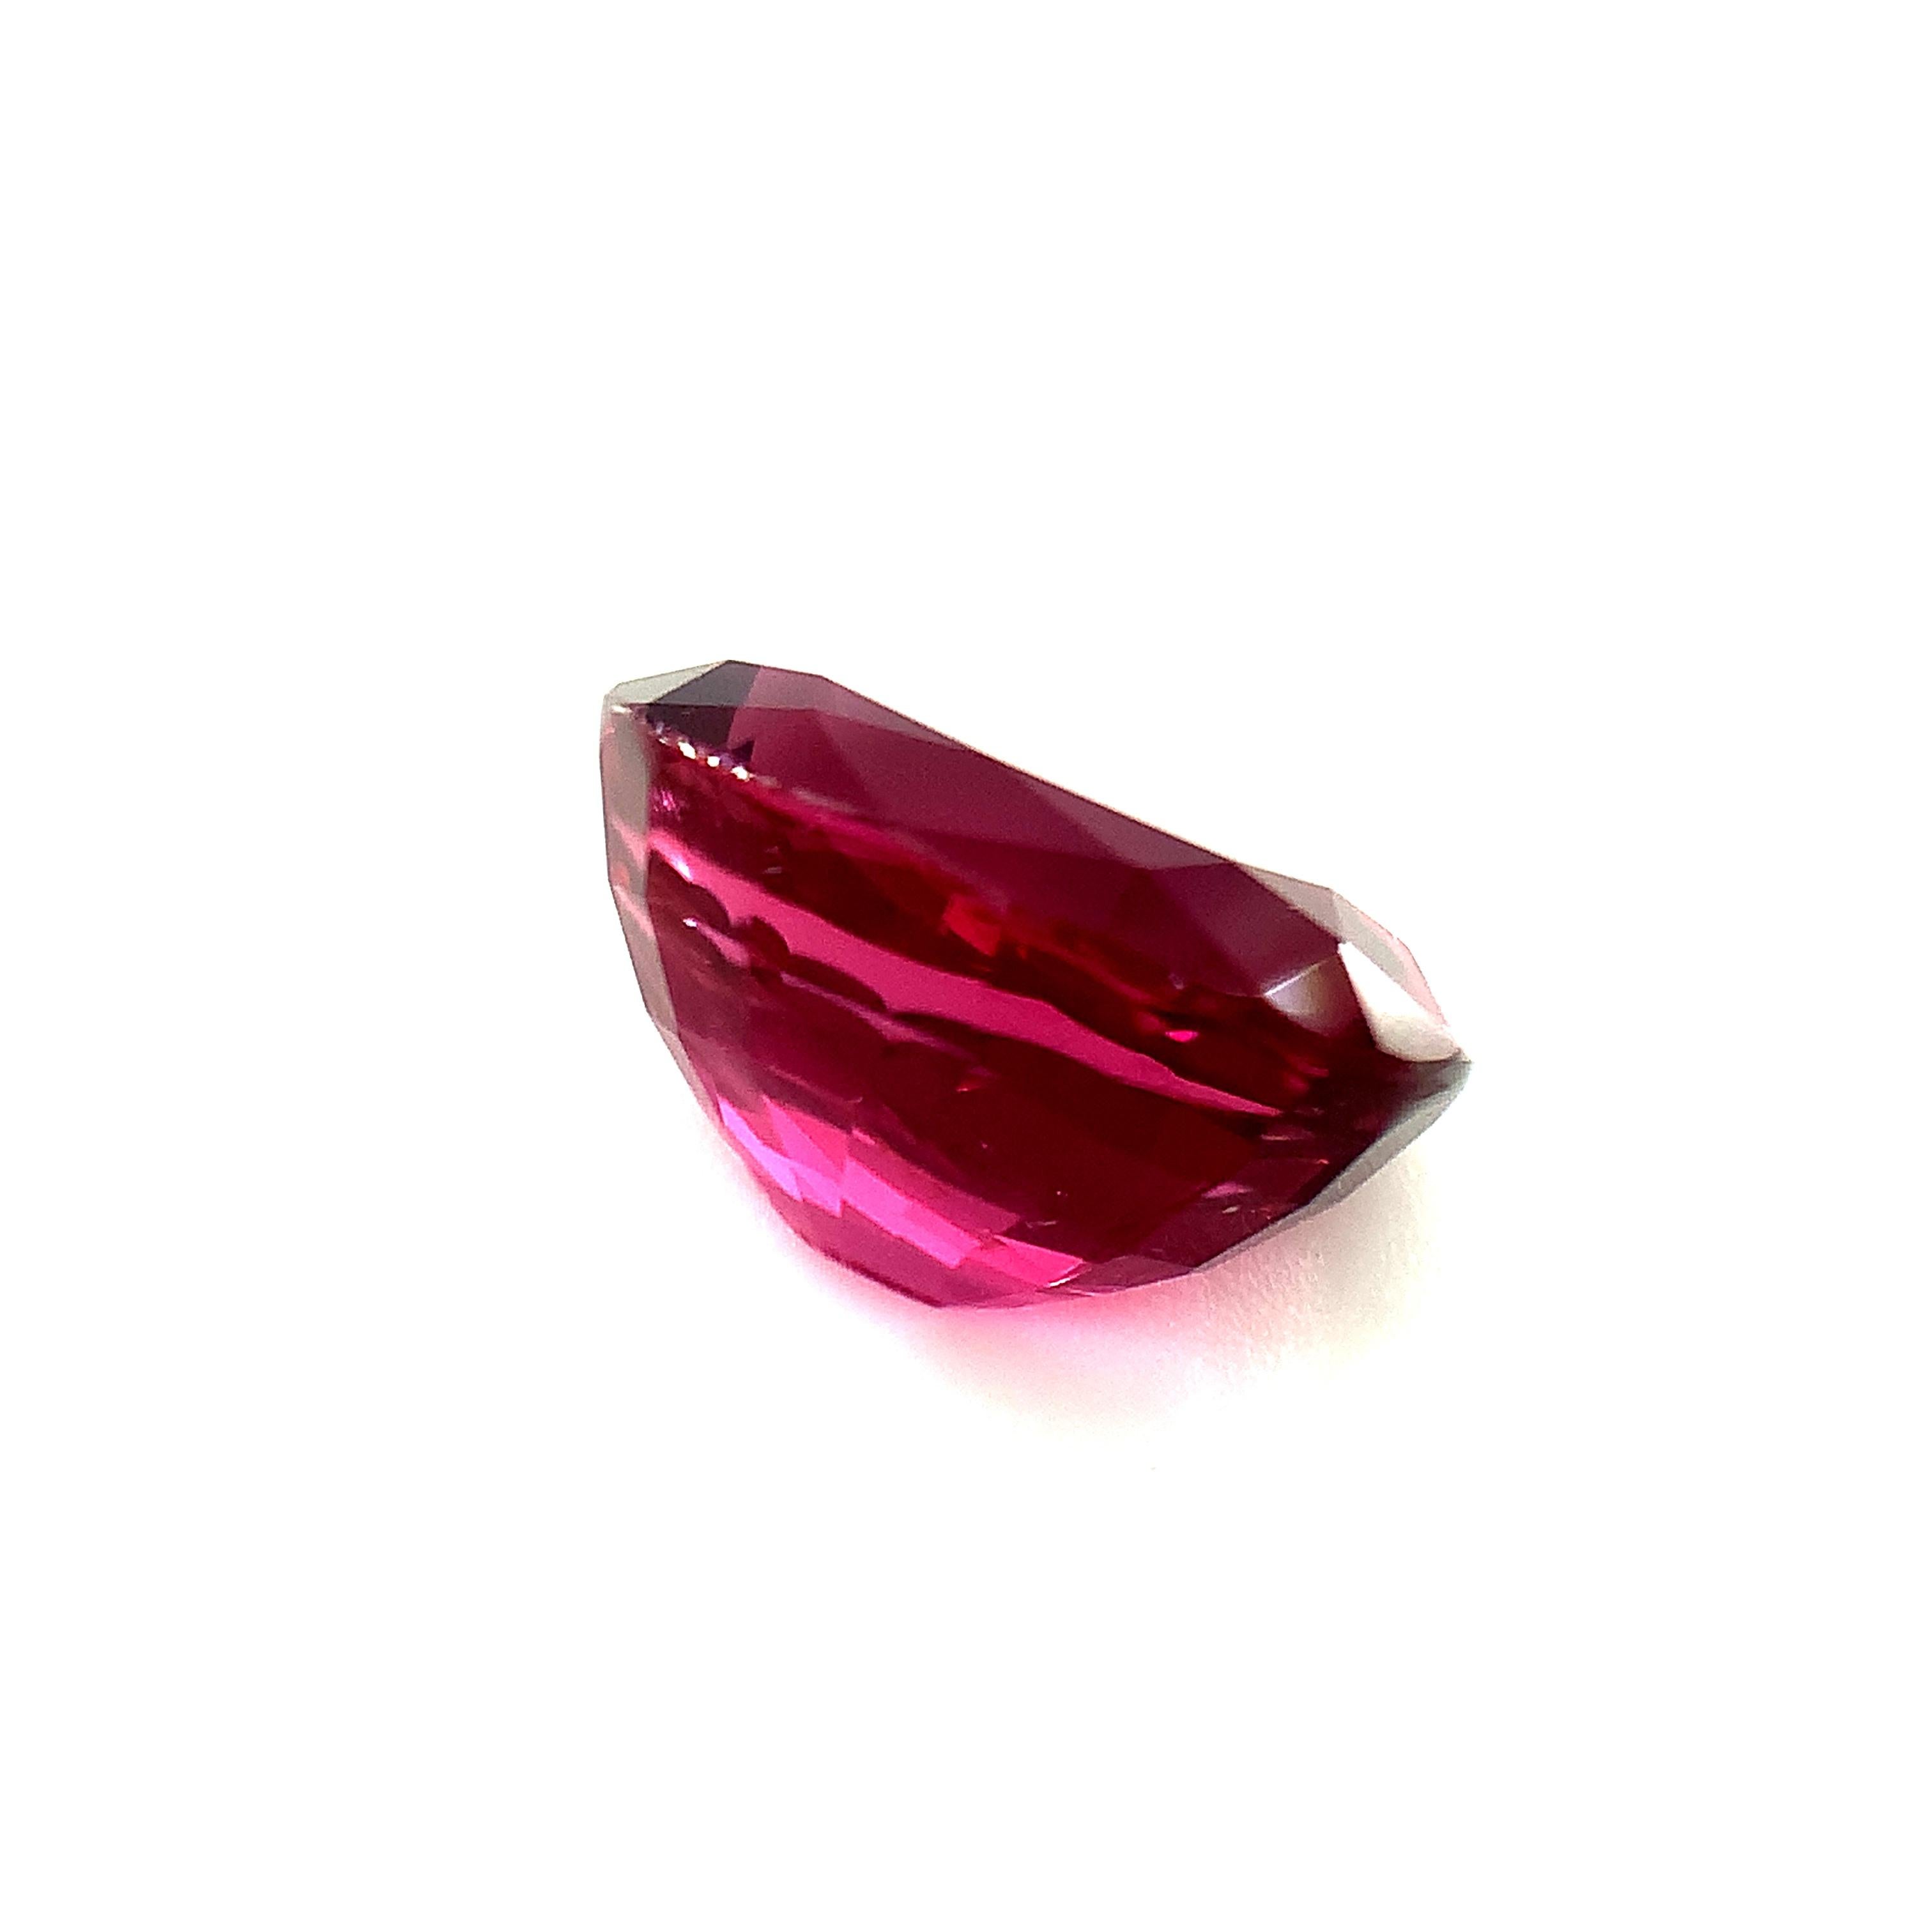 Artisan Unheated 5.18 Carat Purple Pink Spinel, Loose Gemstone, GIA Certified